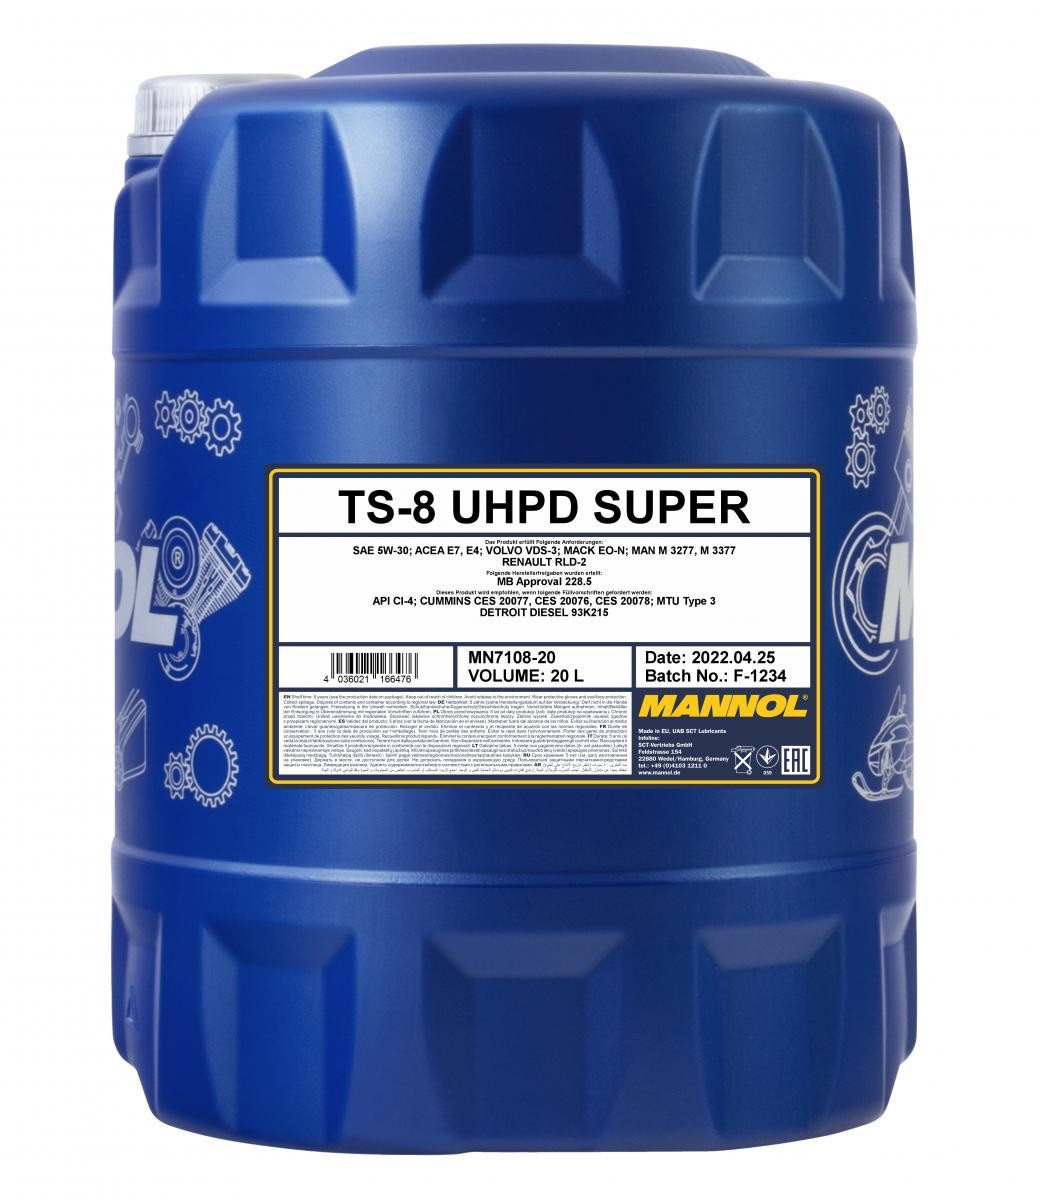 Öl 5W30 vollsynthetisches - MN7108-20 MANNOL TS-8, UHPD Super